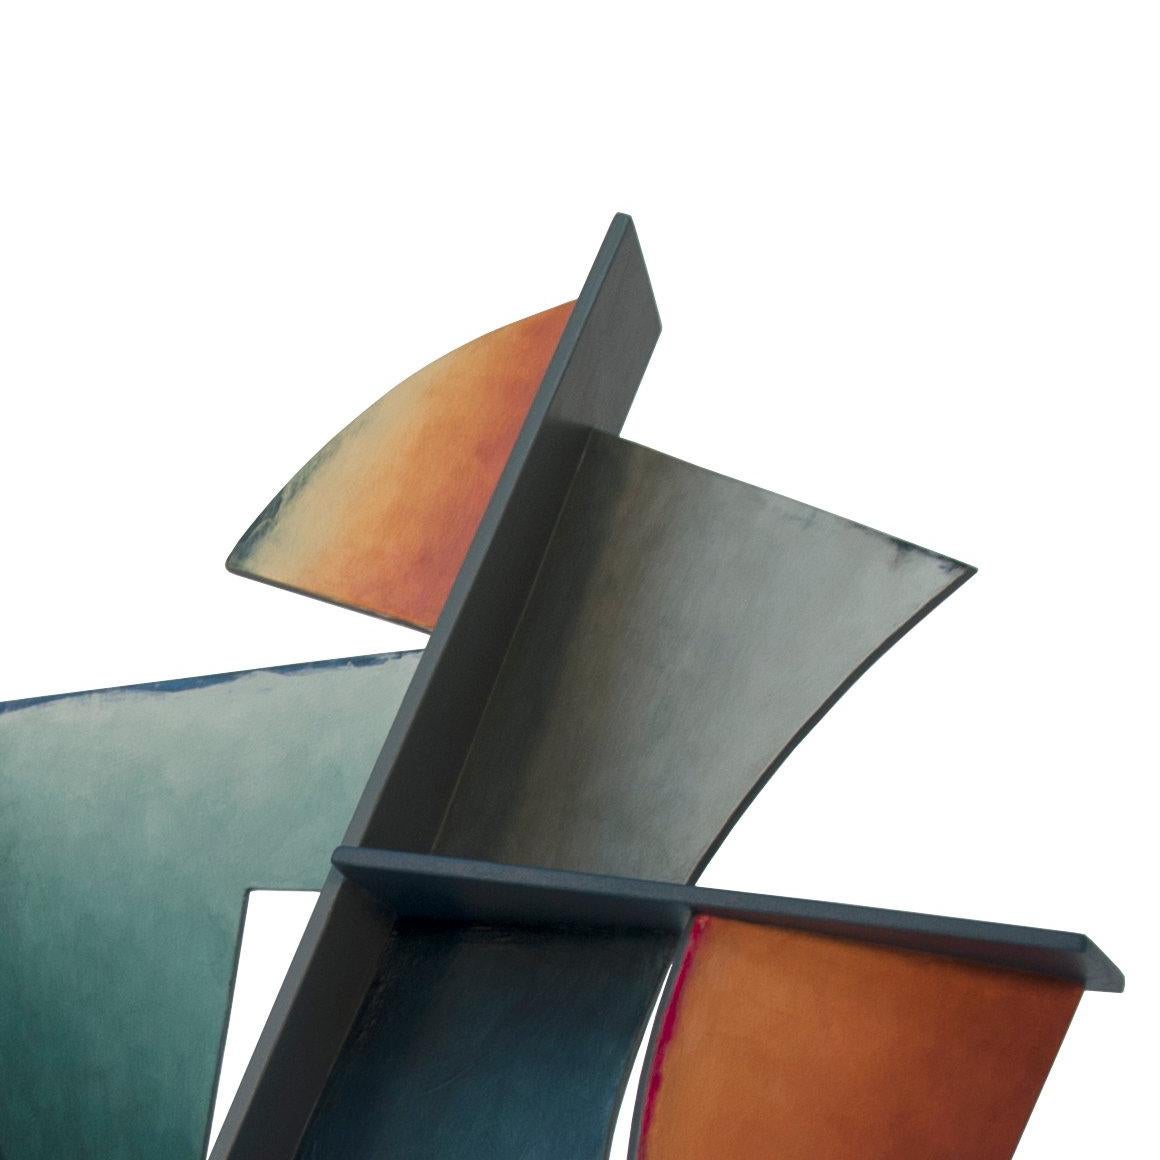 Nightfall – handbemalte geschweißte Stahlskulptur abstrakte geometrische Form – Sculpture von Chris Hill